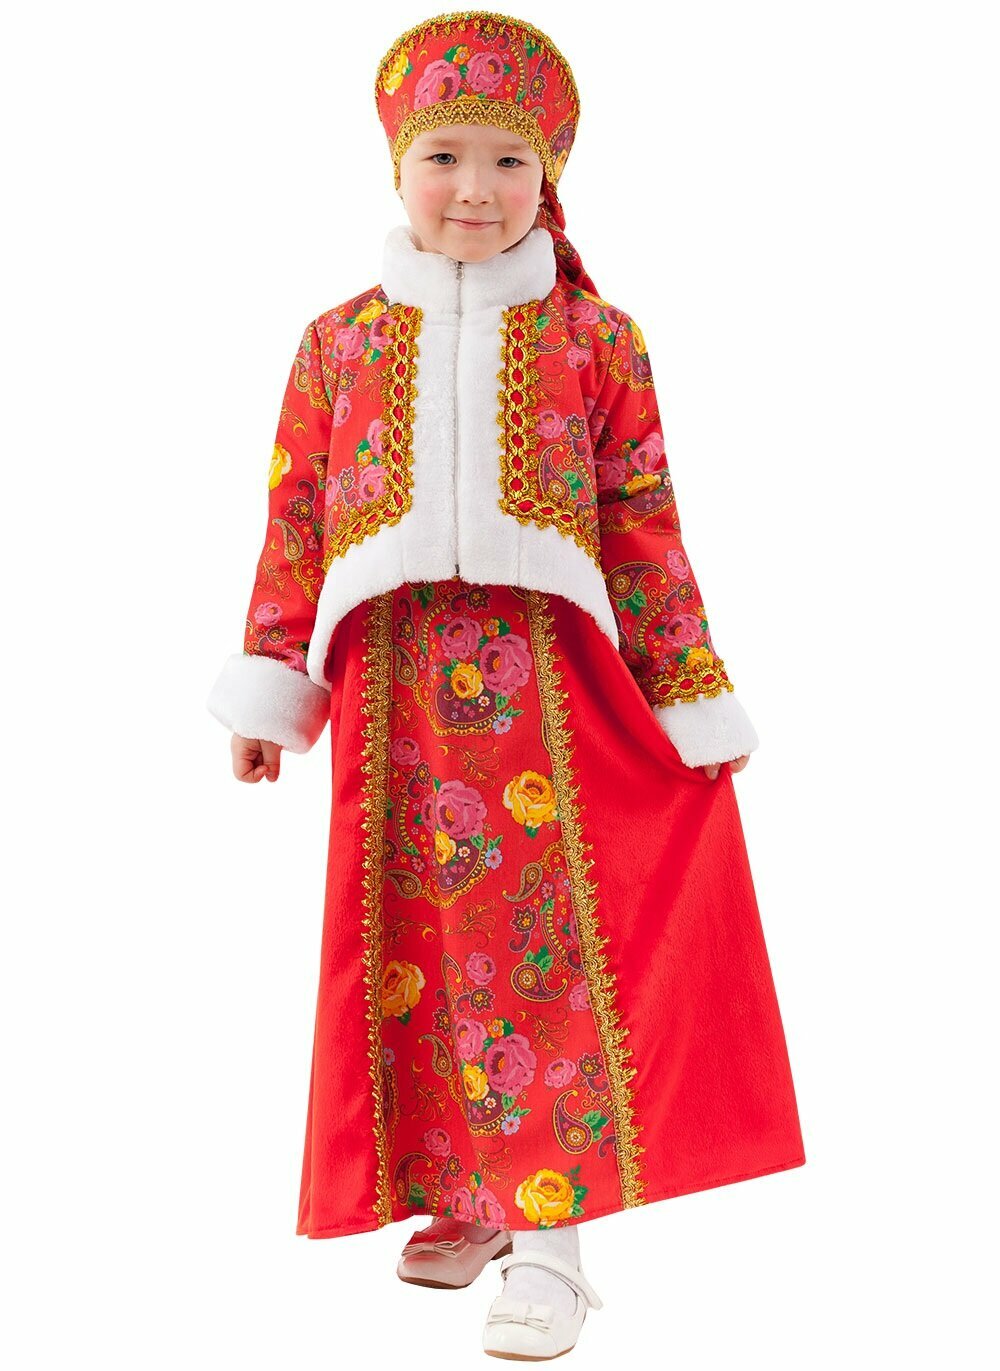 Костюм Масленица, русский народный, для девочки, размер 32, рост 122 см, на 7 лет , Батик